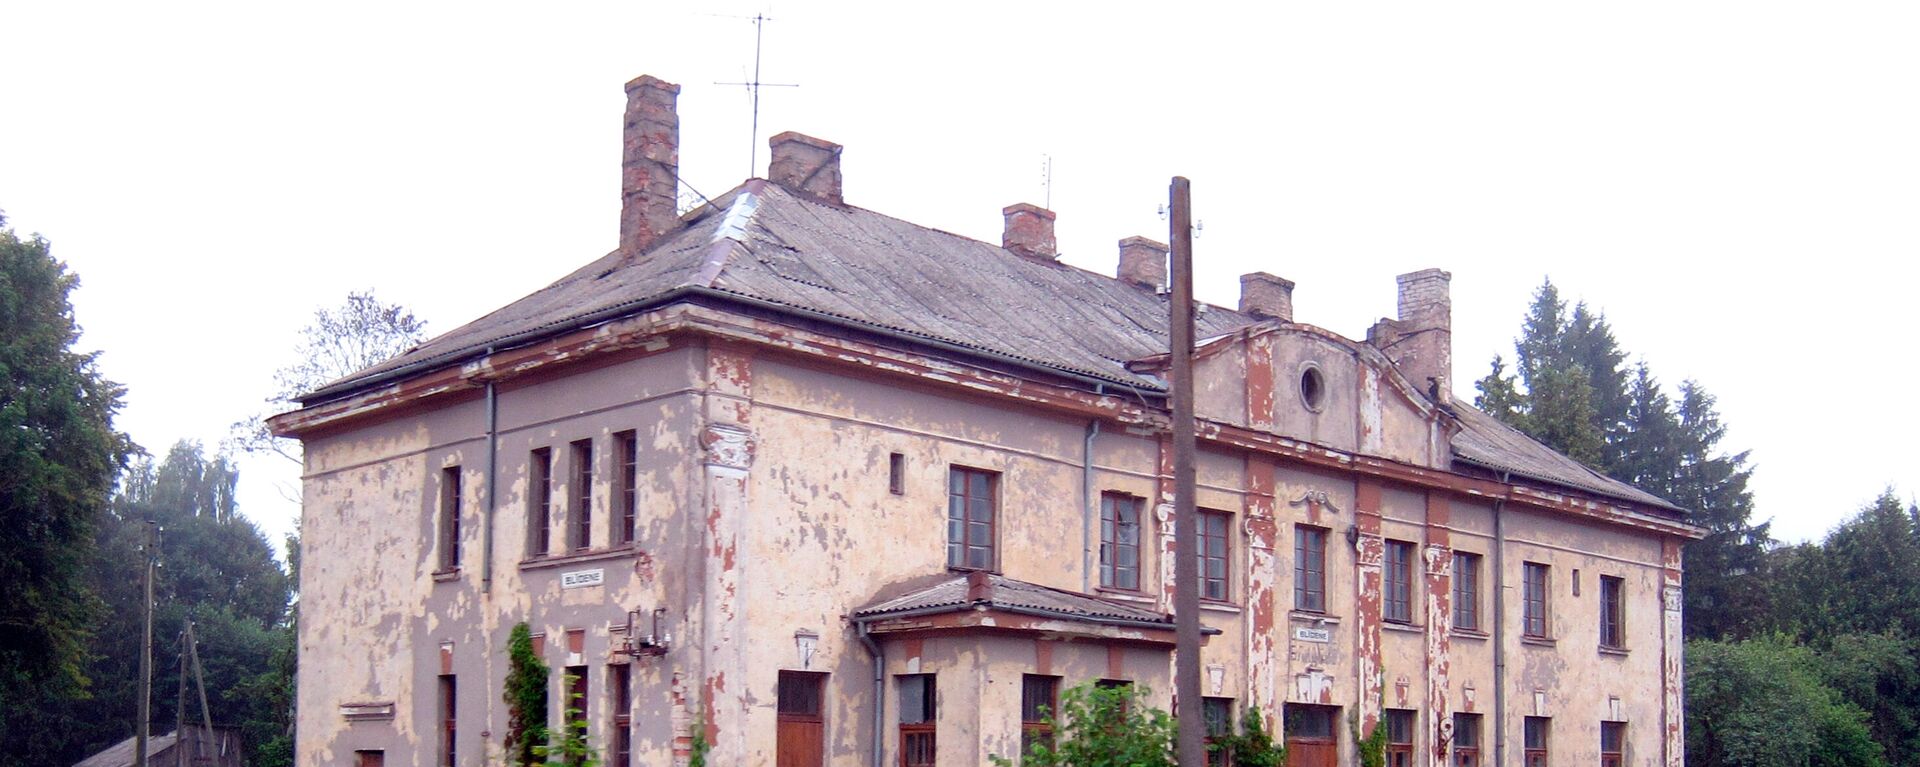 Заброшенное здание железнодорожной станции Блидене. Архивное фото - Sputnik Латвия, 1920, 27.12.2021